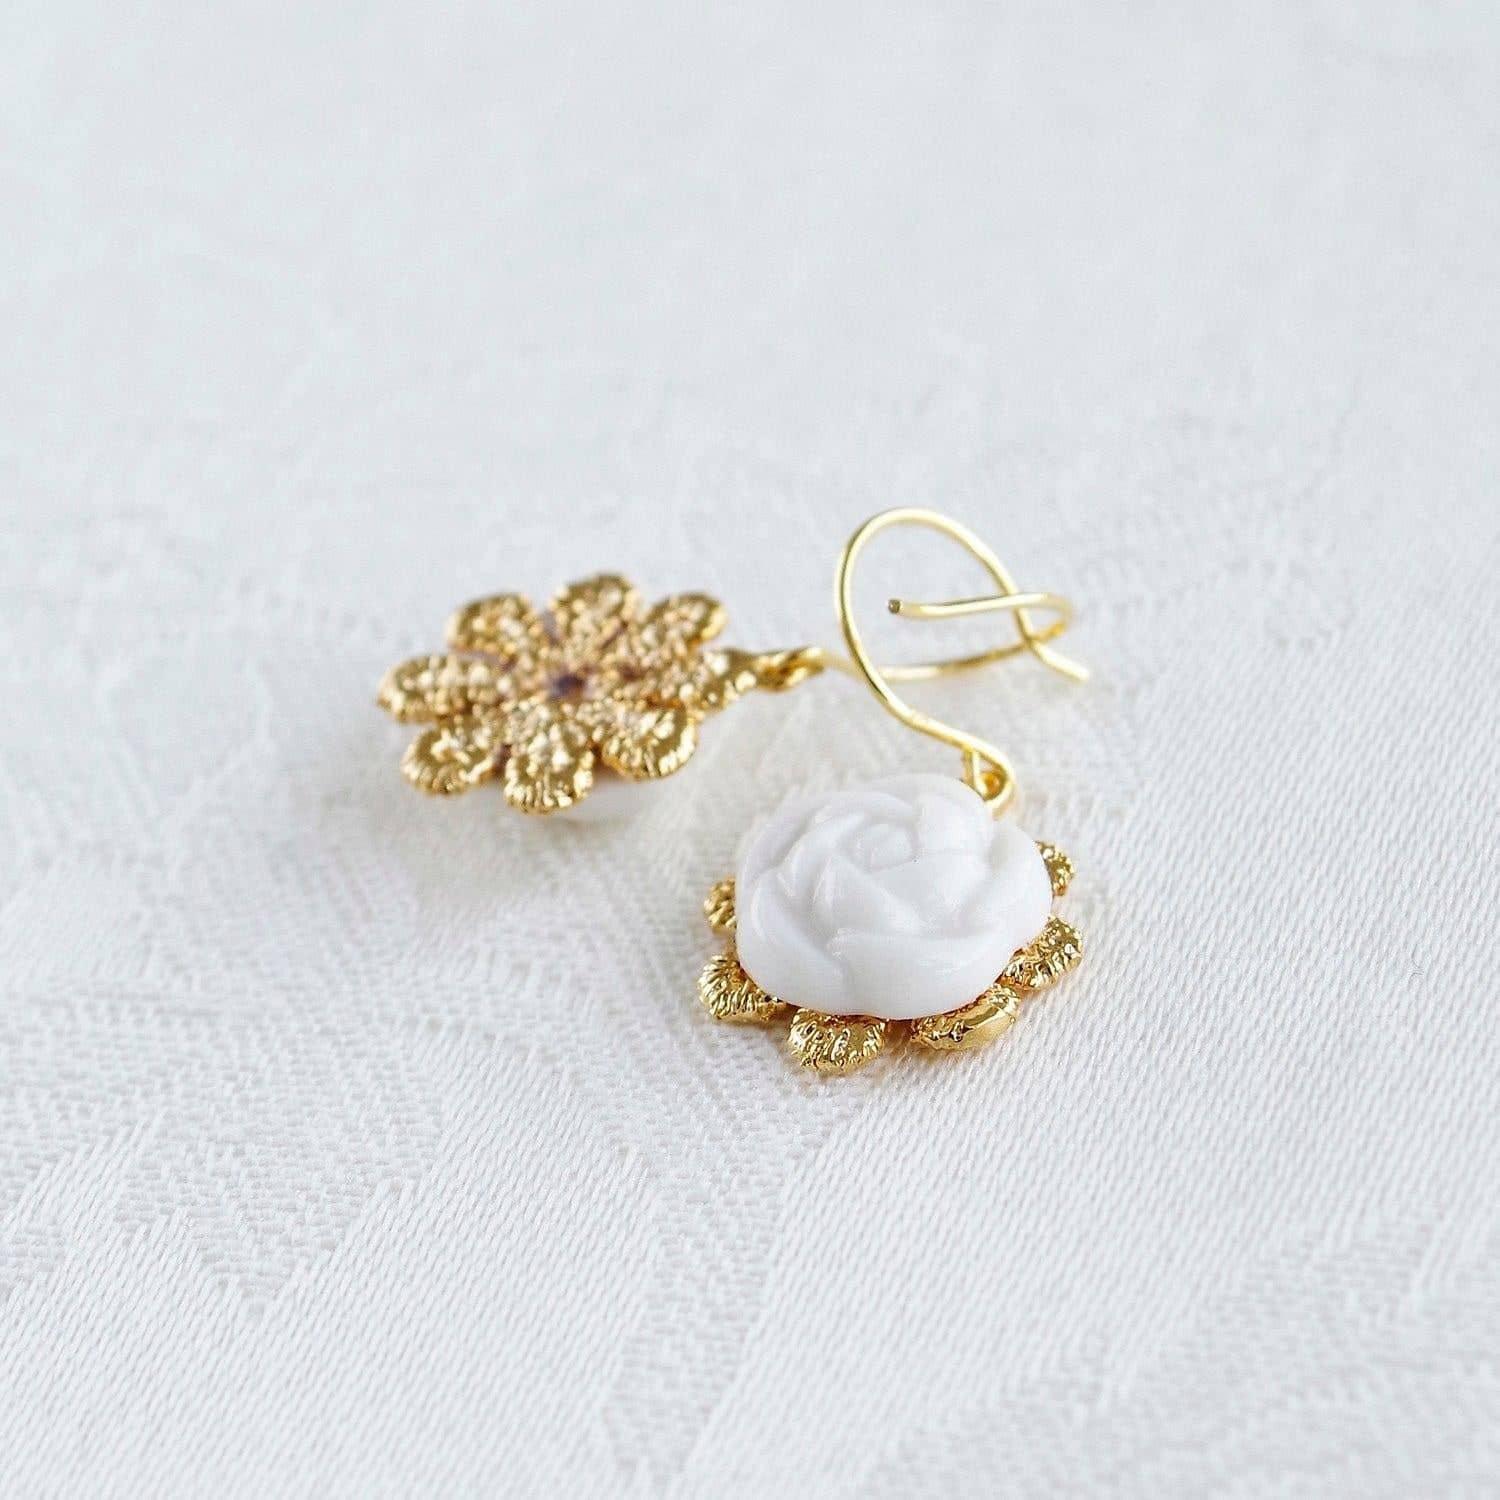 Everyday Porcelain Camellia Flower Charm Earrings | POPORCELAIN Based in Denmark